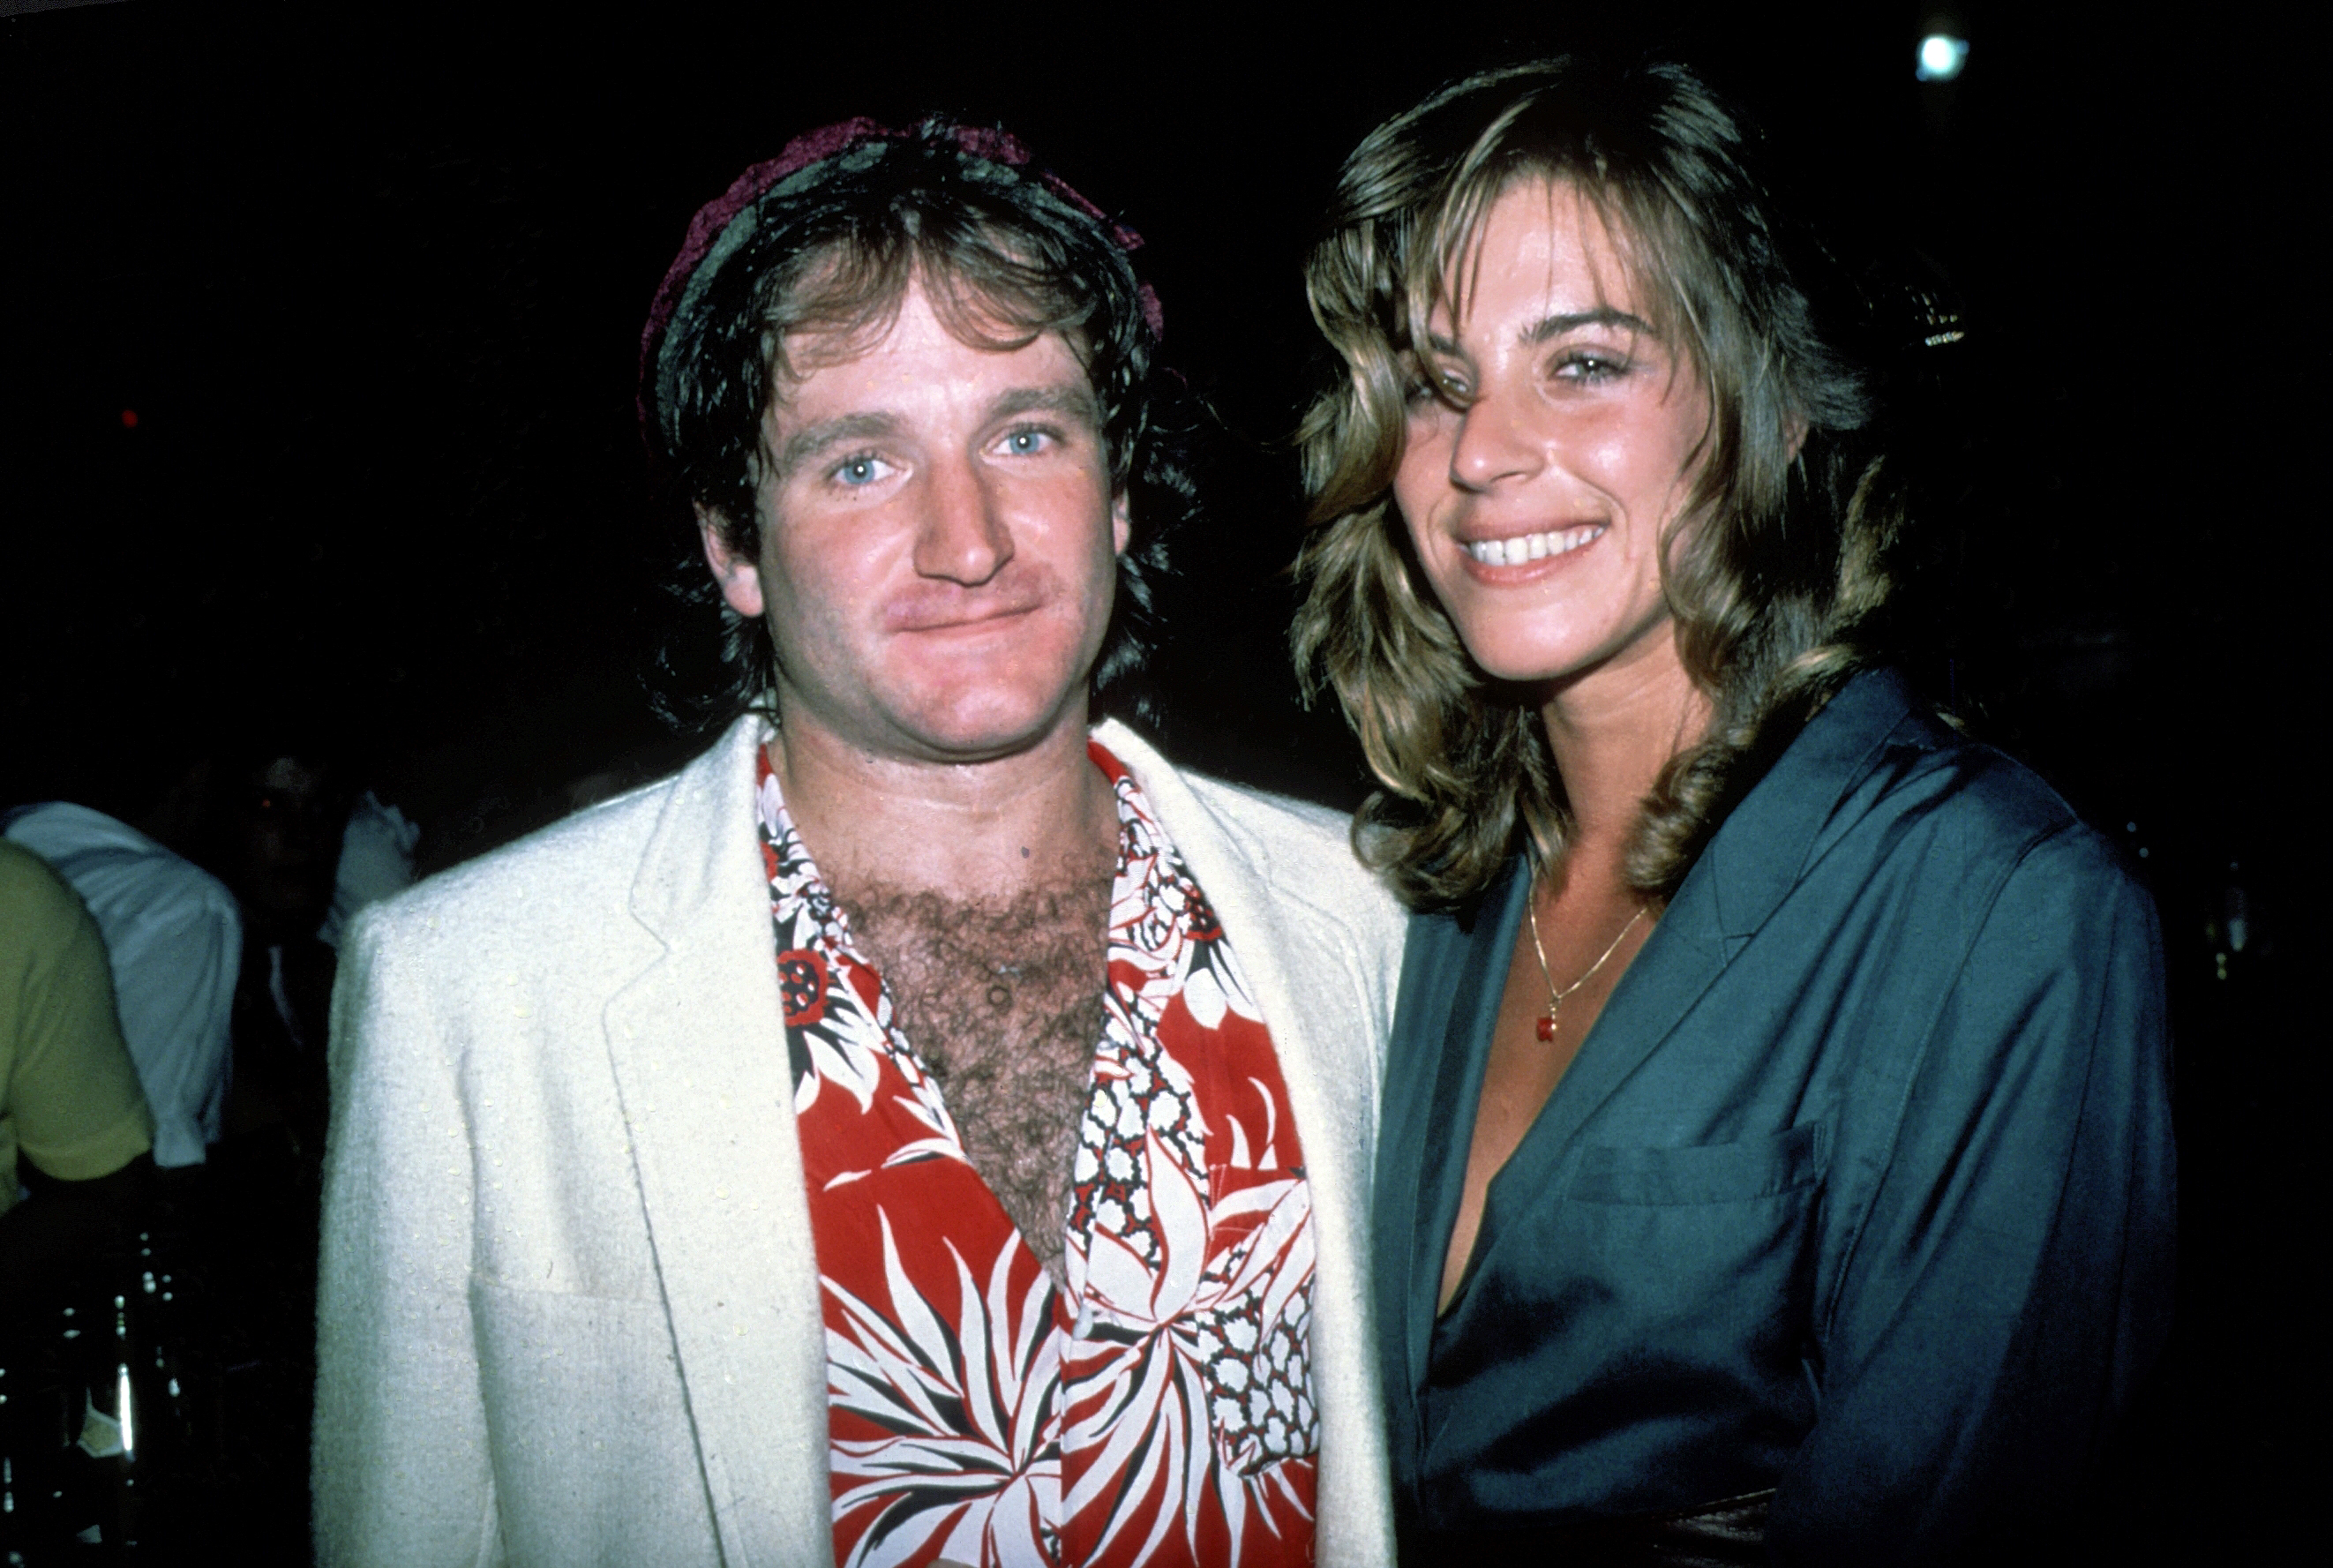 Robin Williams et sa première épouse Valerie Velardi vers 1979 à New York. | Source : Getty Images